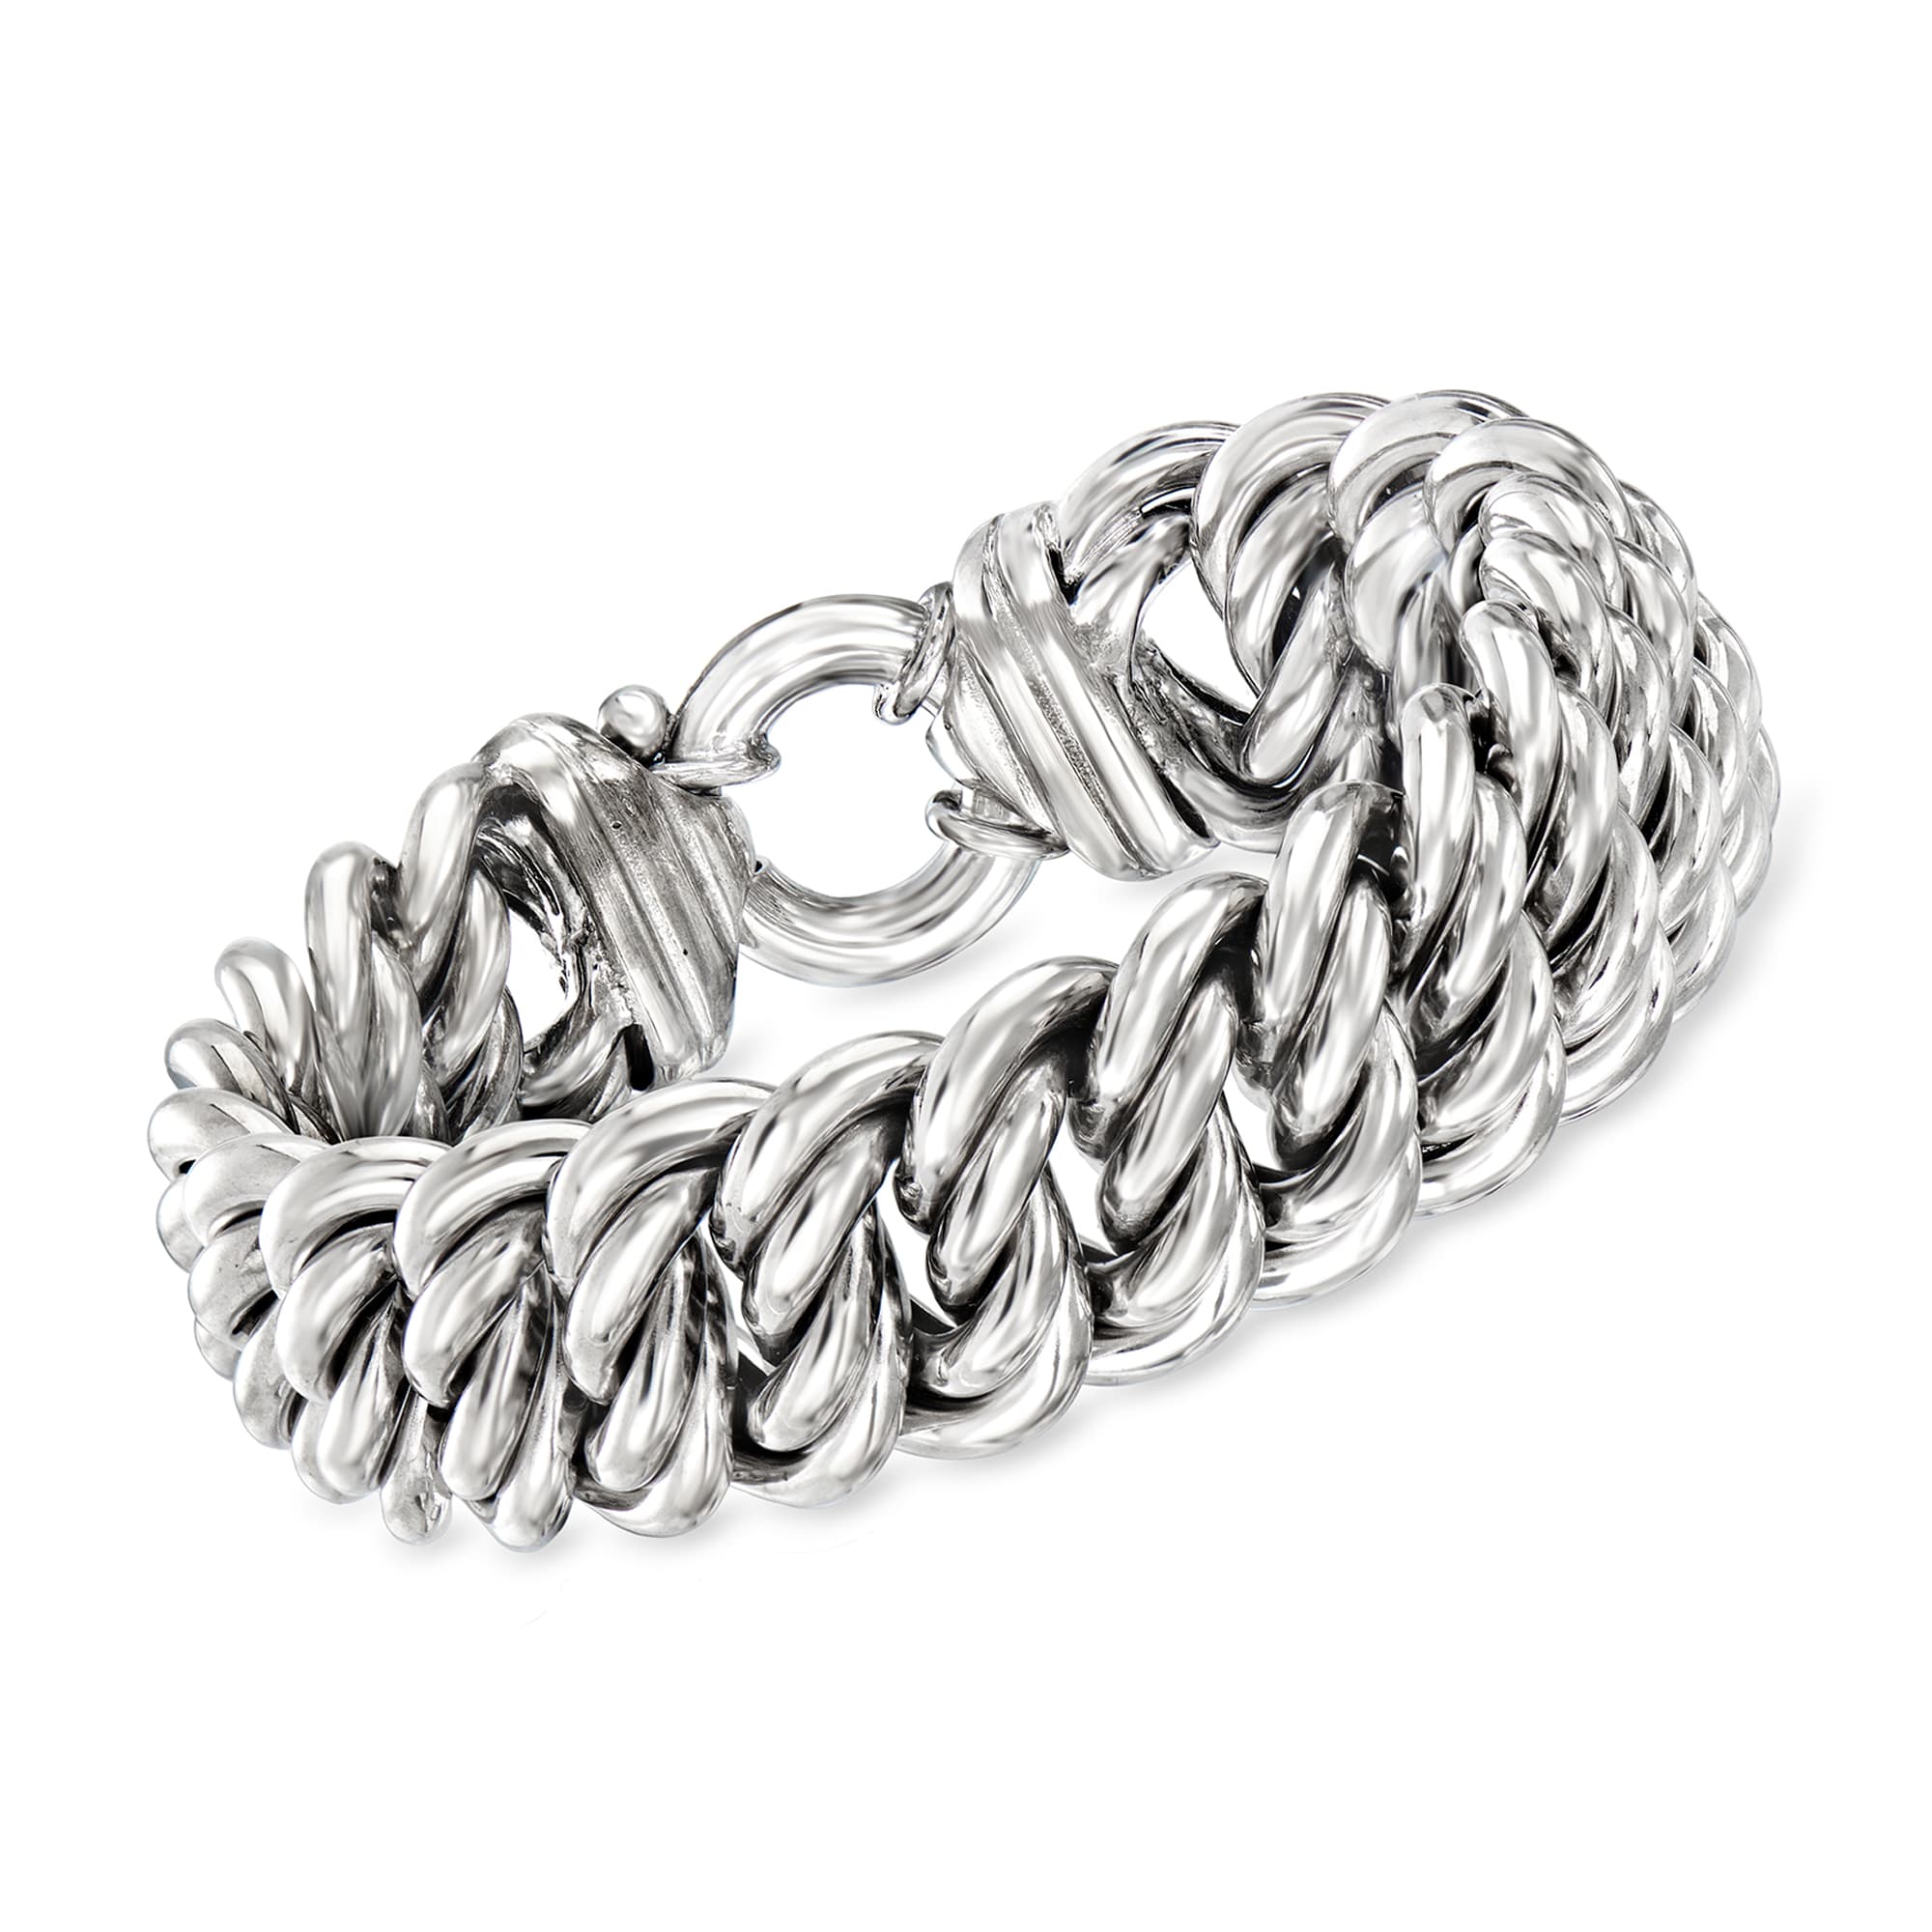 Ross-Simons - Italian Sterling Silver Braided Bracelet. 8